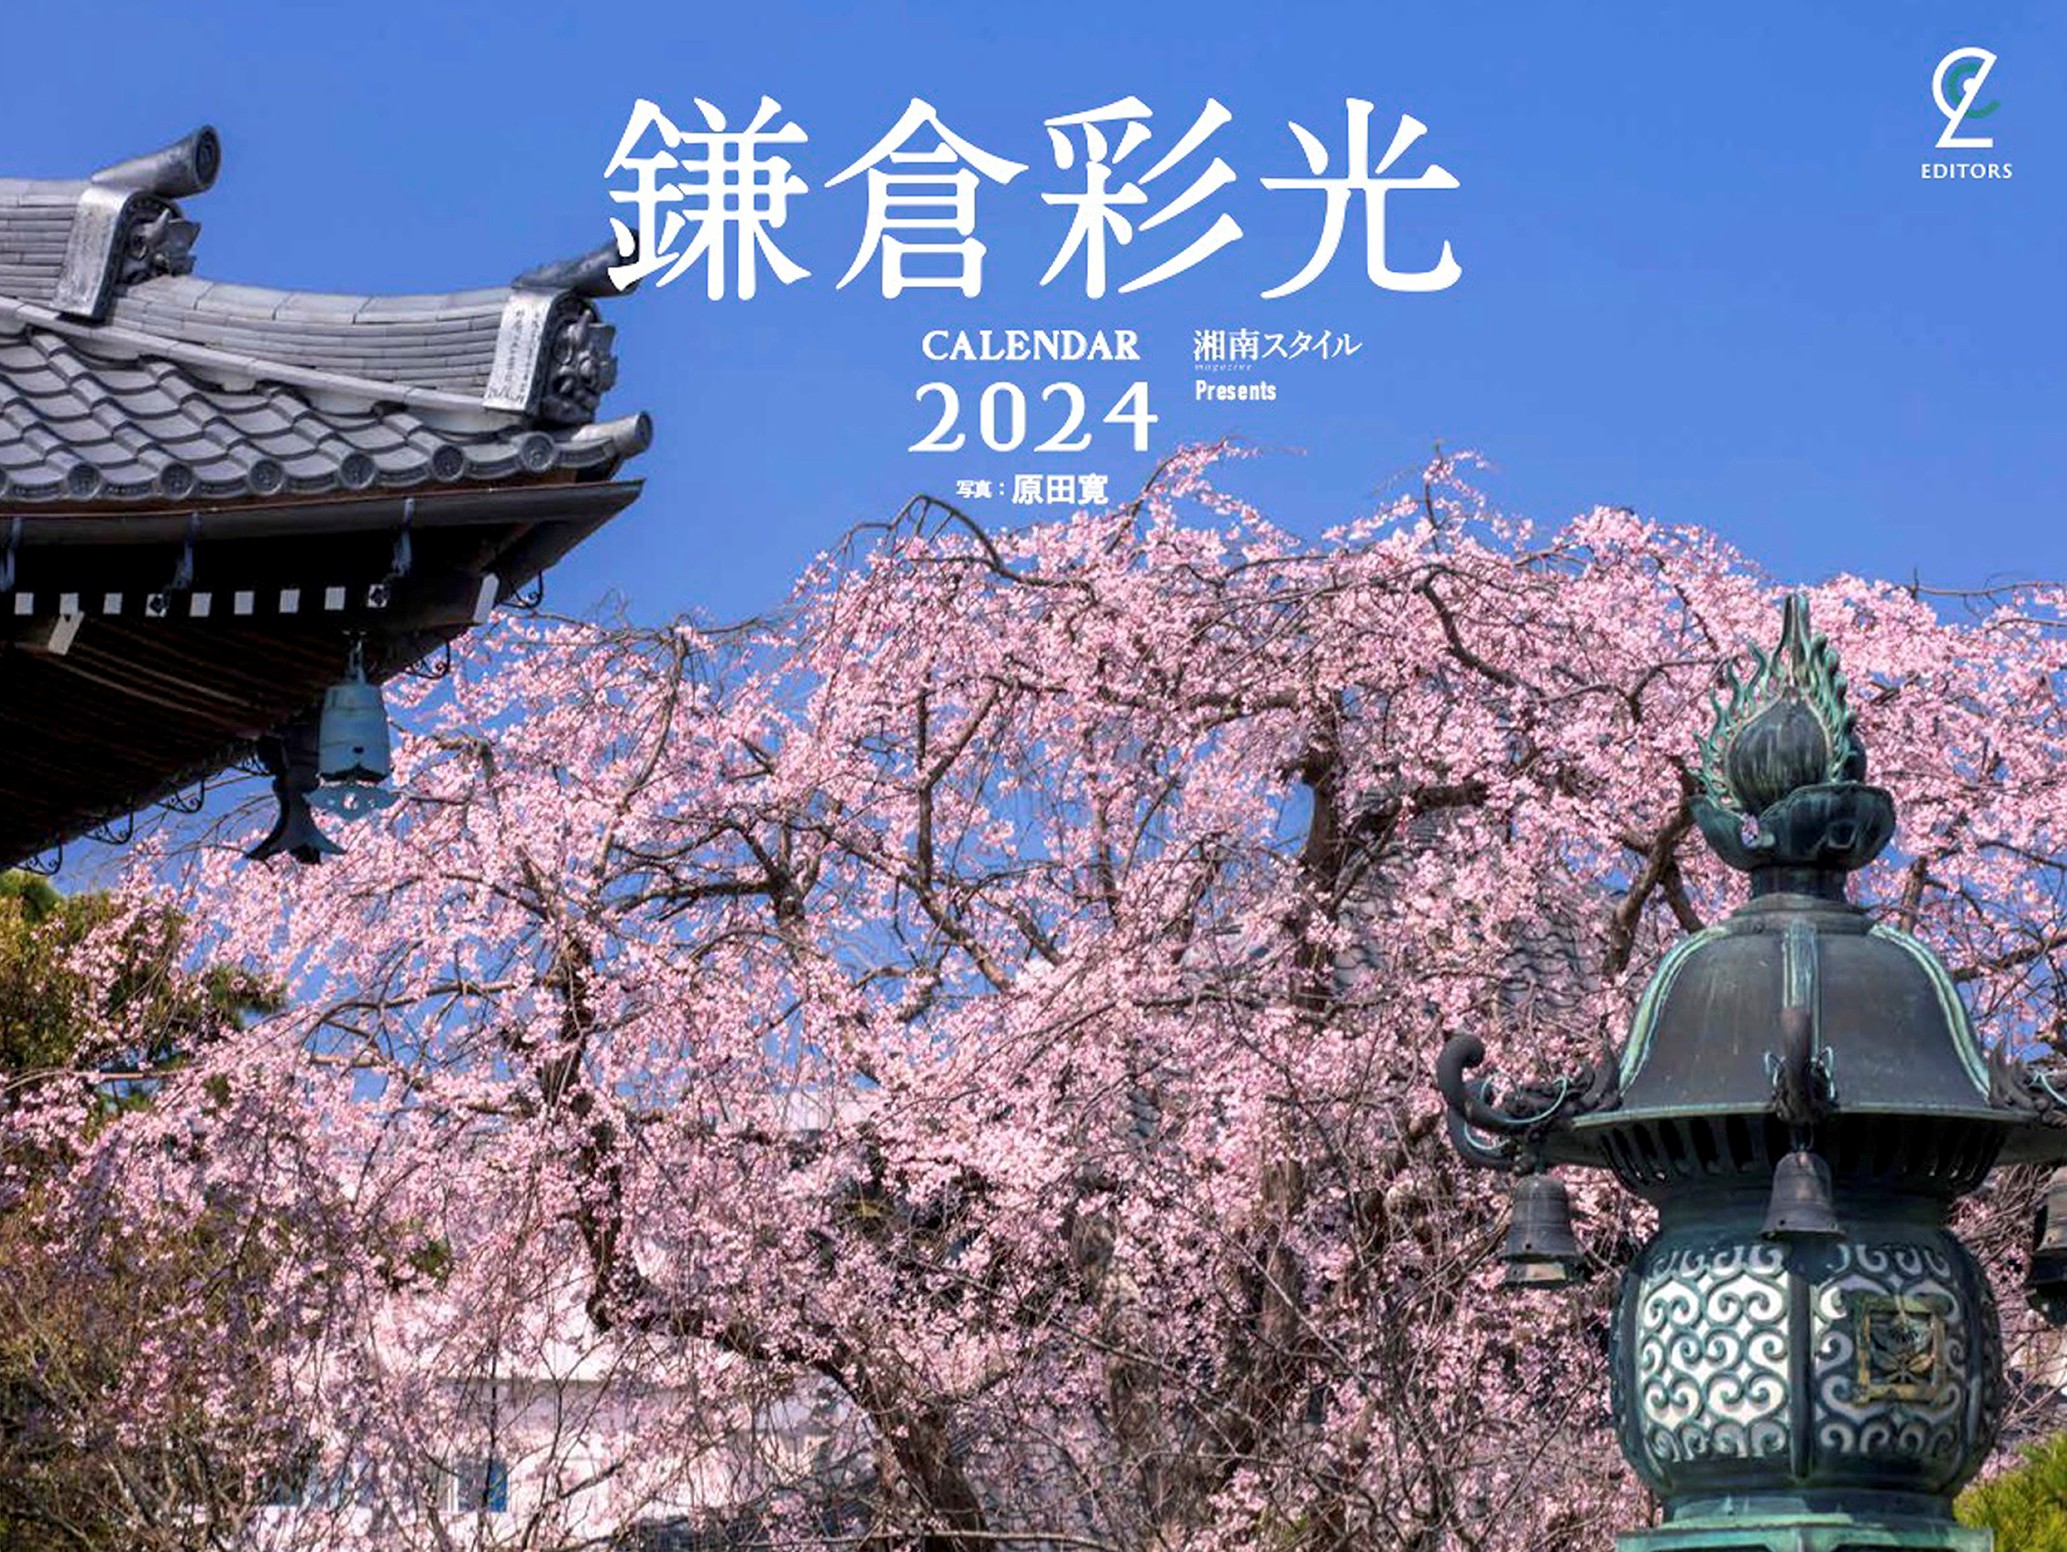 2022カレンダー鎌倉彩光表紙